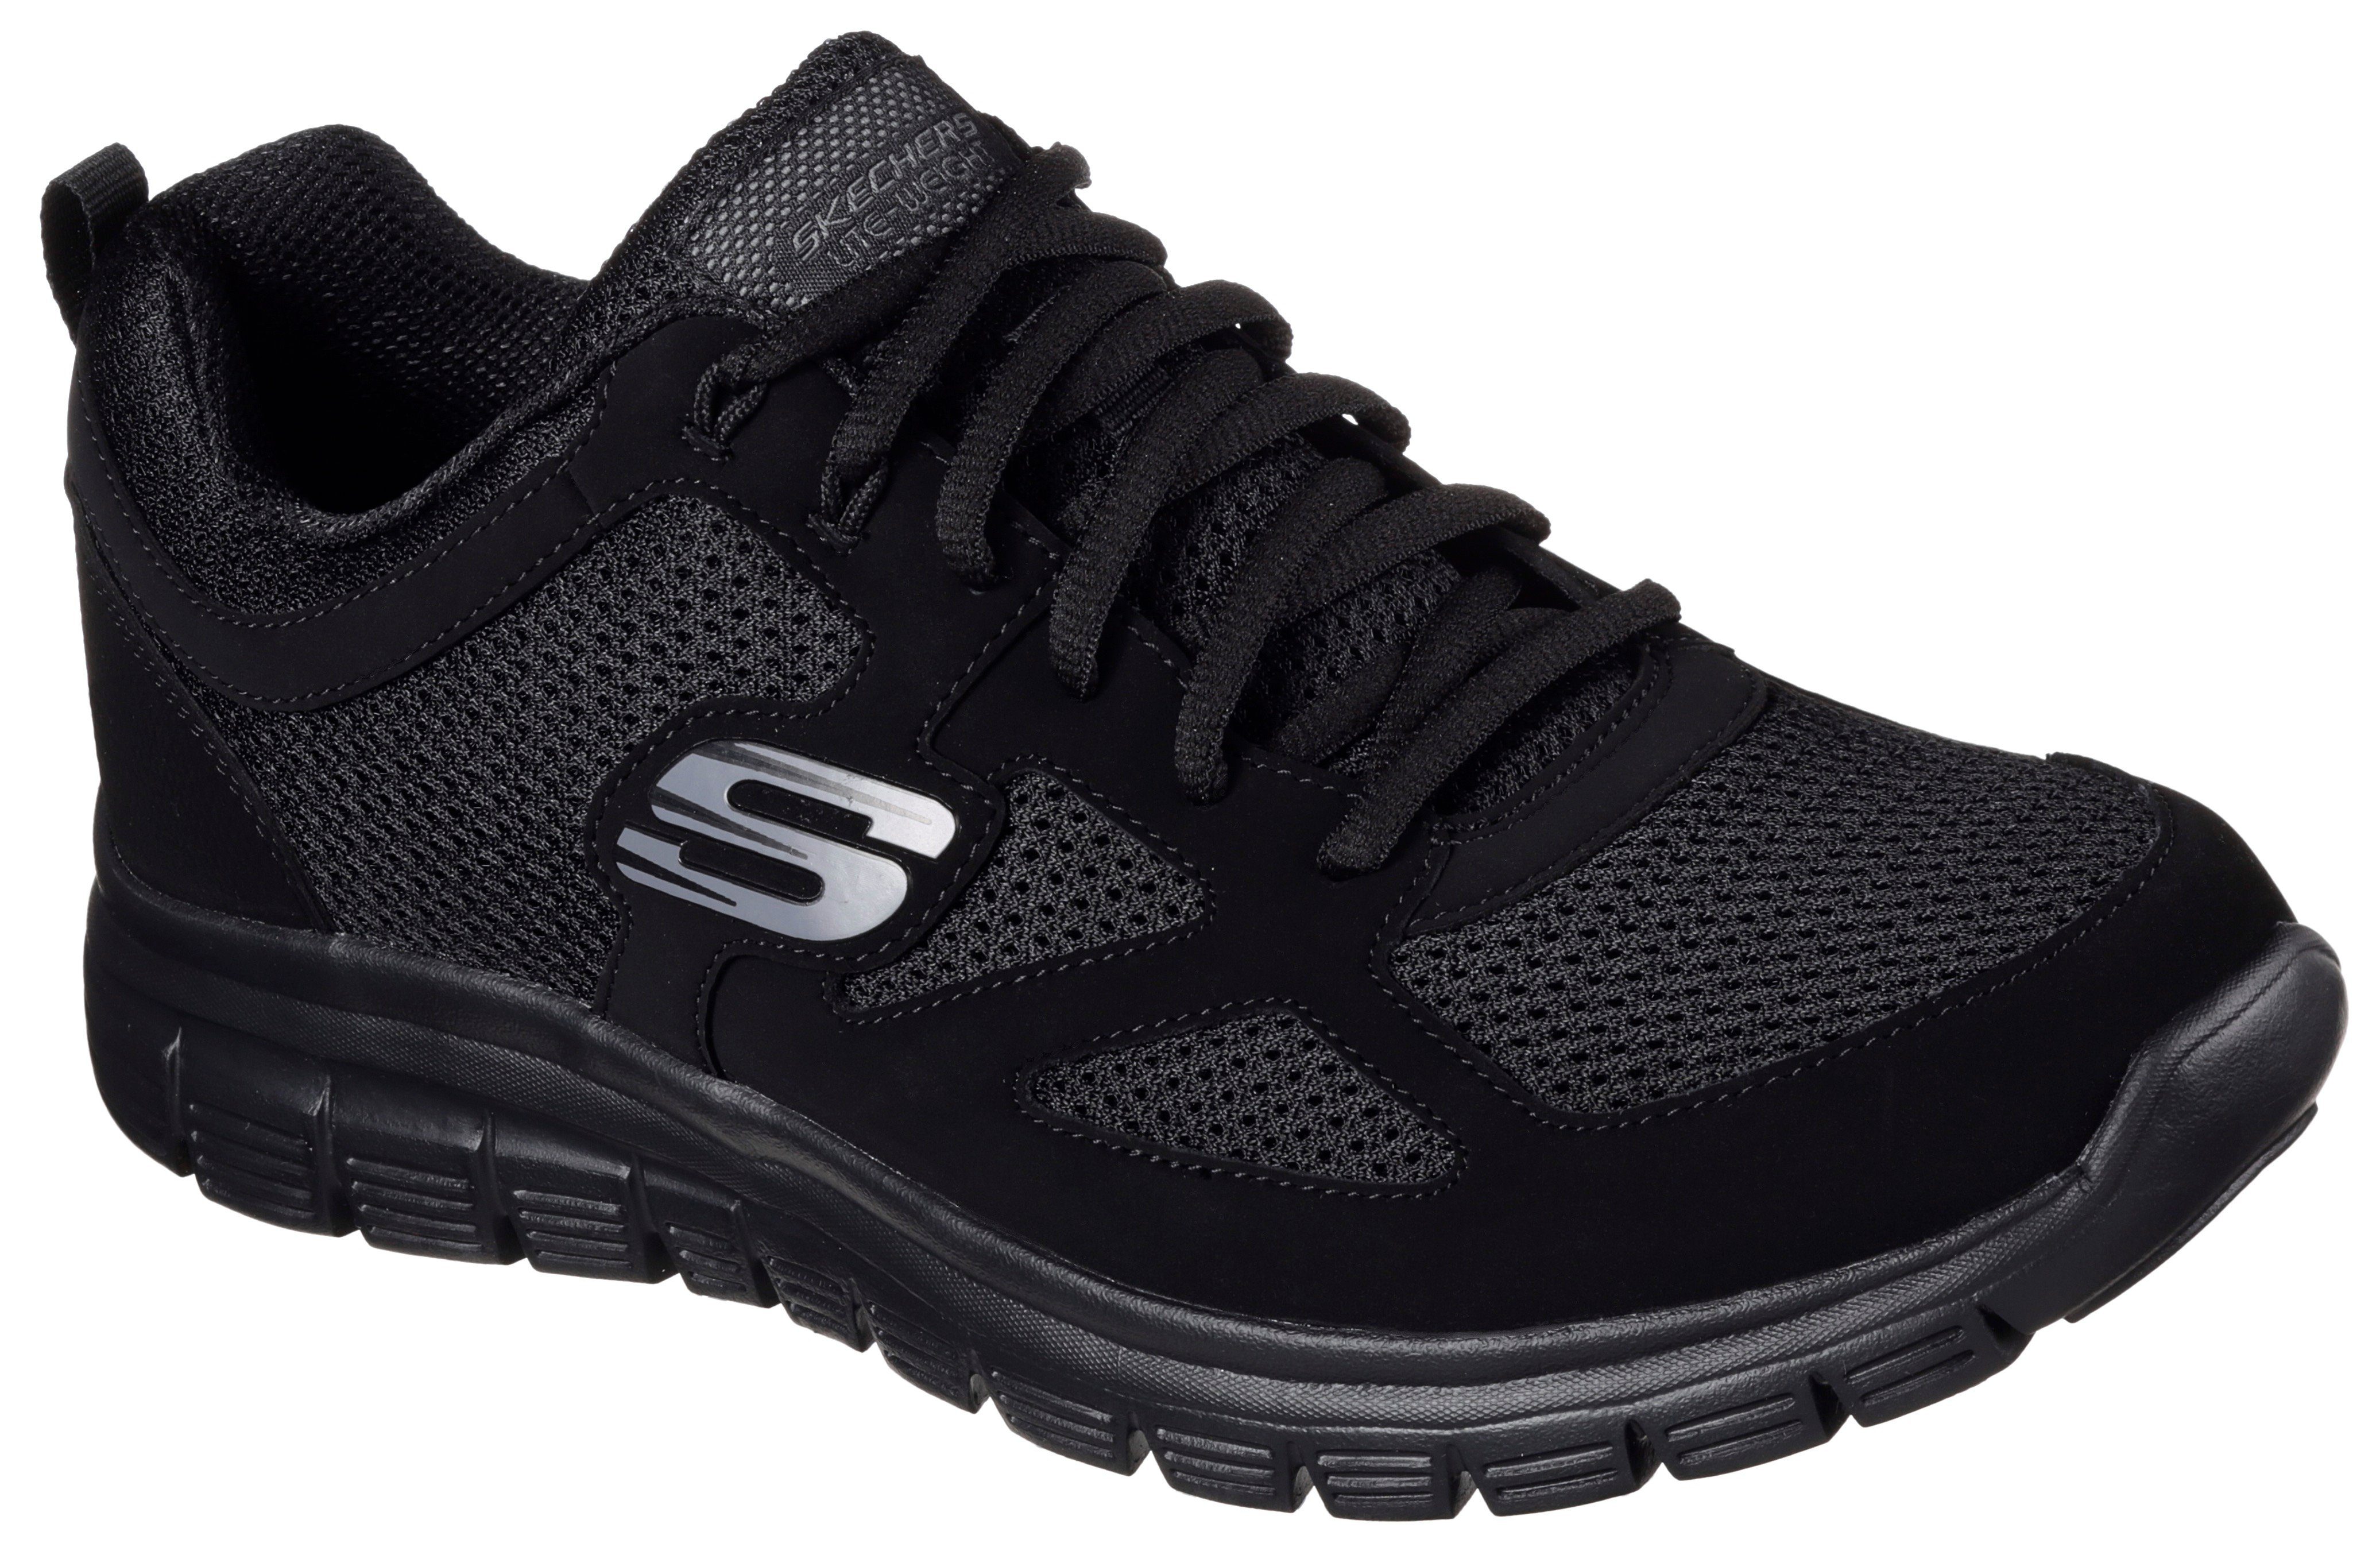 BURNS-AGOURA Look im black/black monochromen Skechers Sneaker